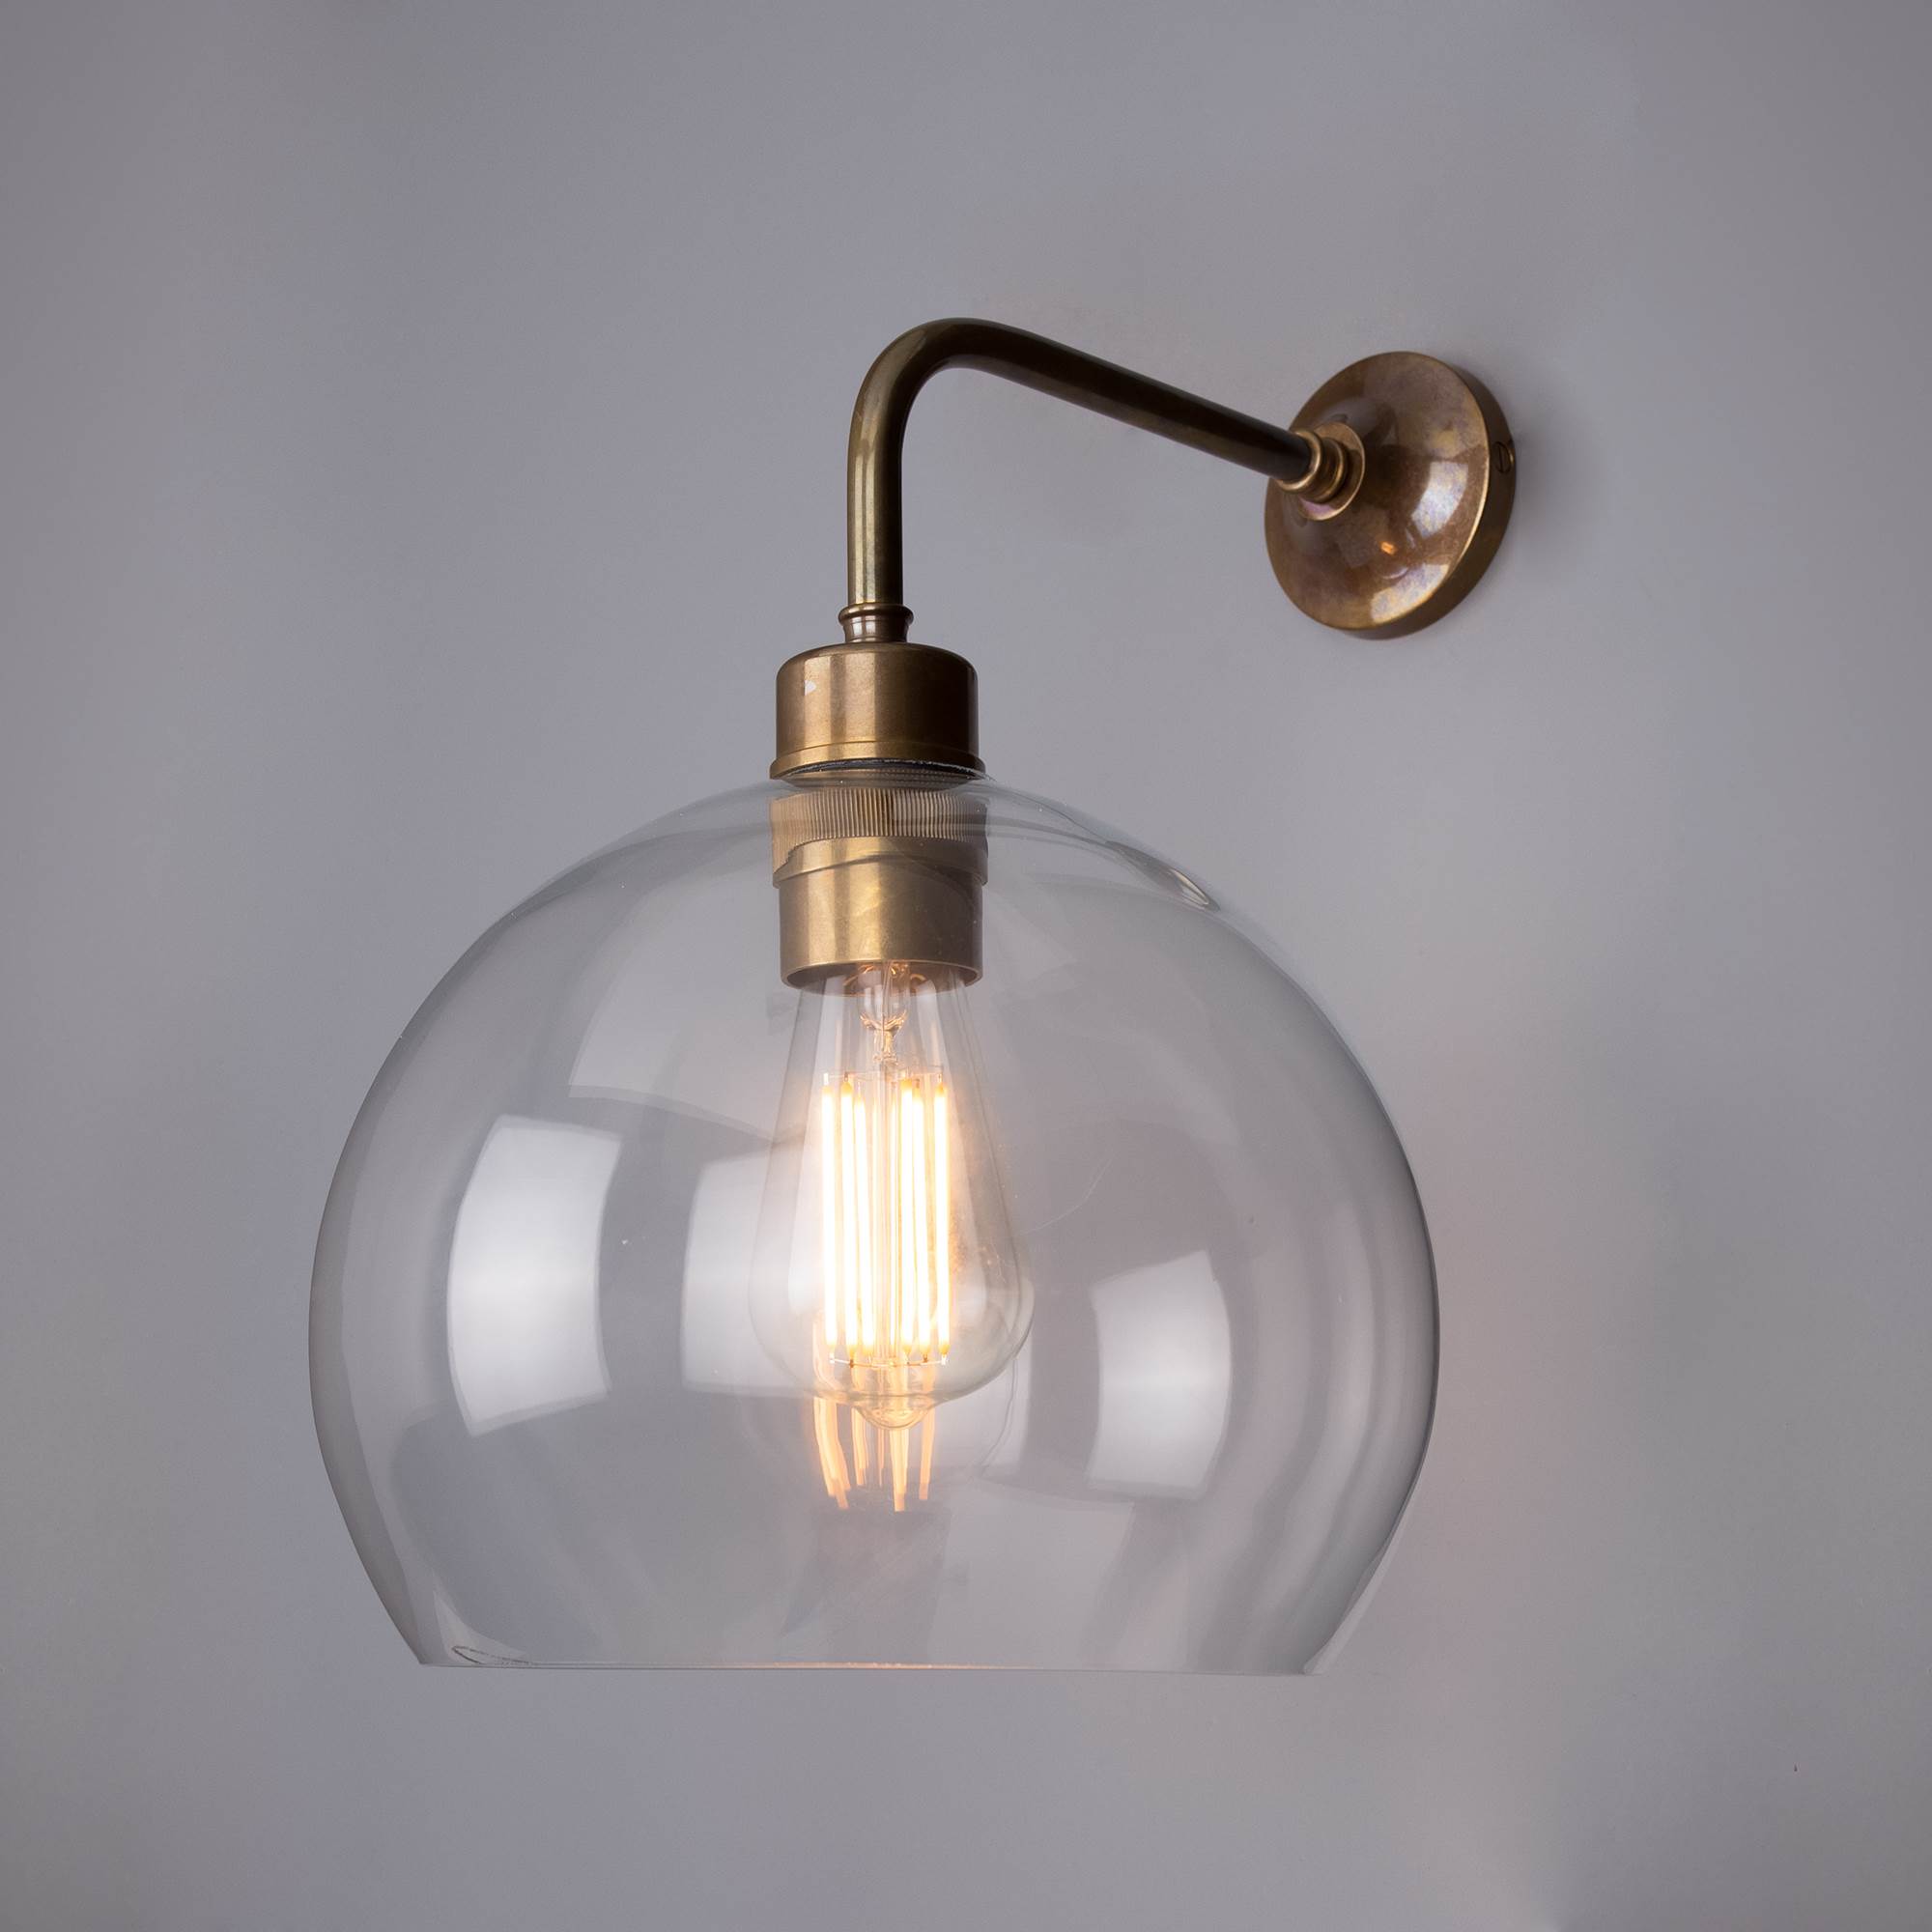 Mullan Lighting Eden 25cm Clear Glass Wall Light with Globe Glass - Antique  Brass